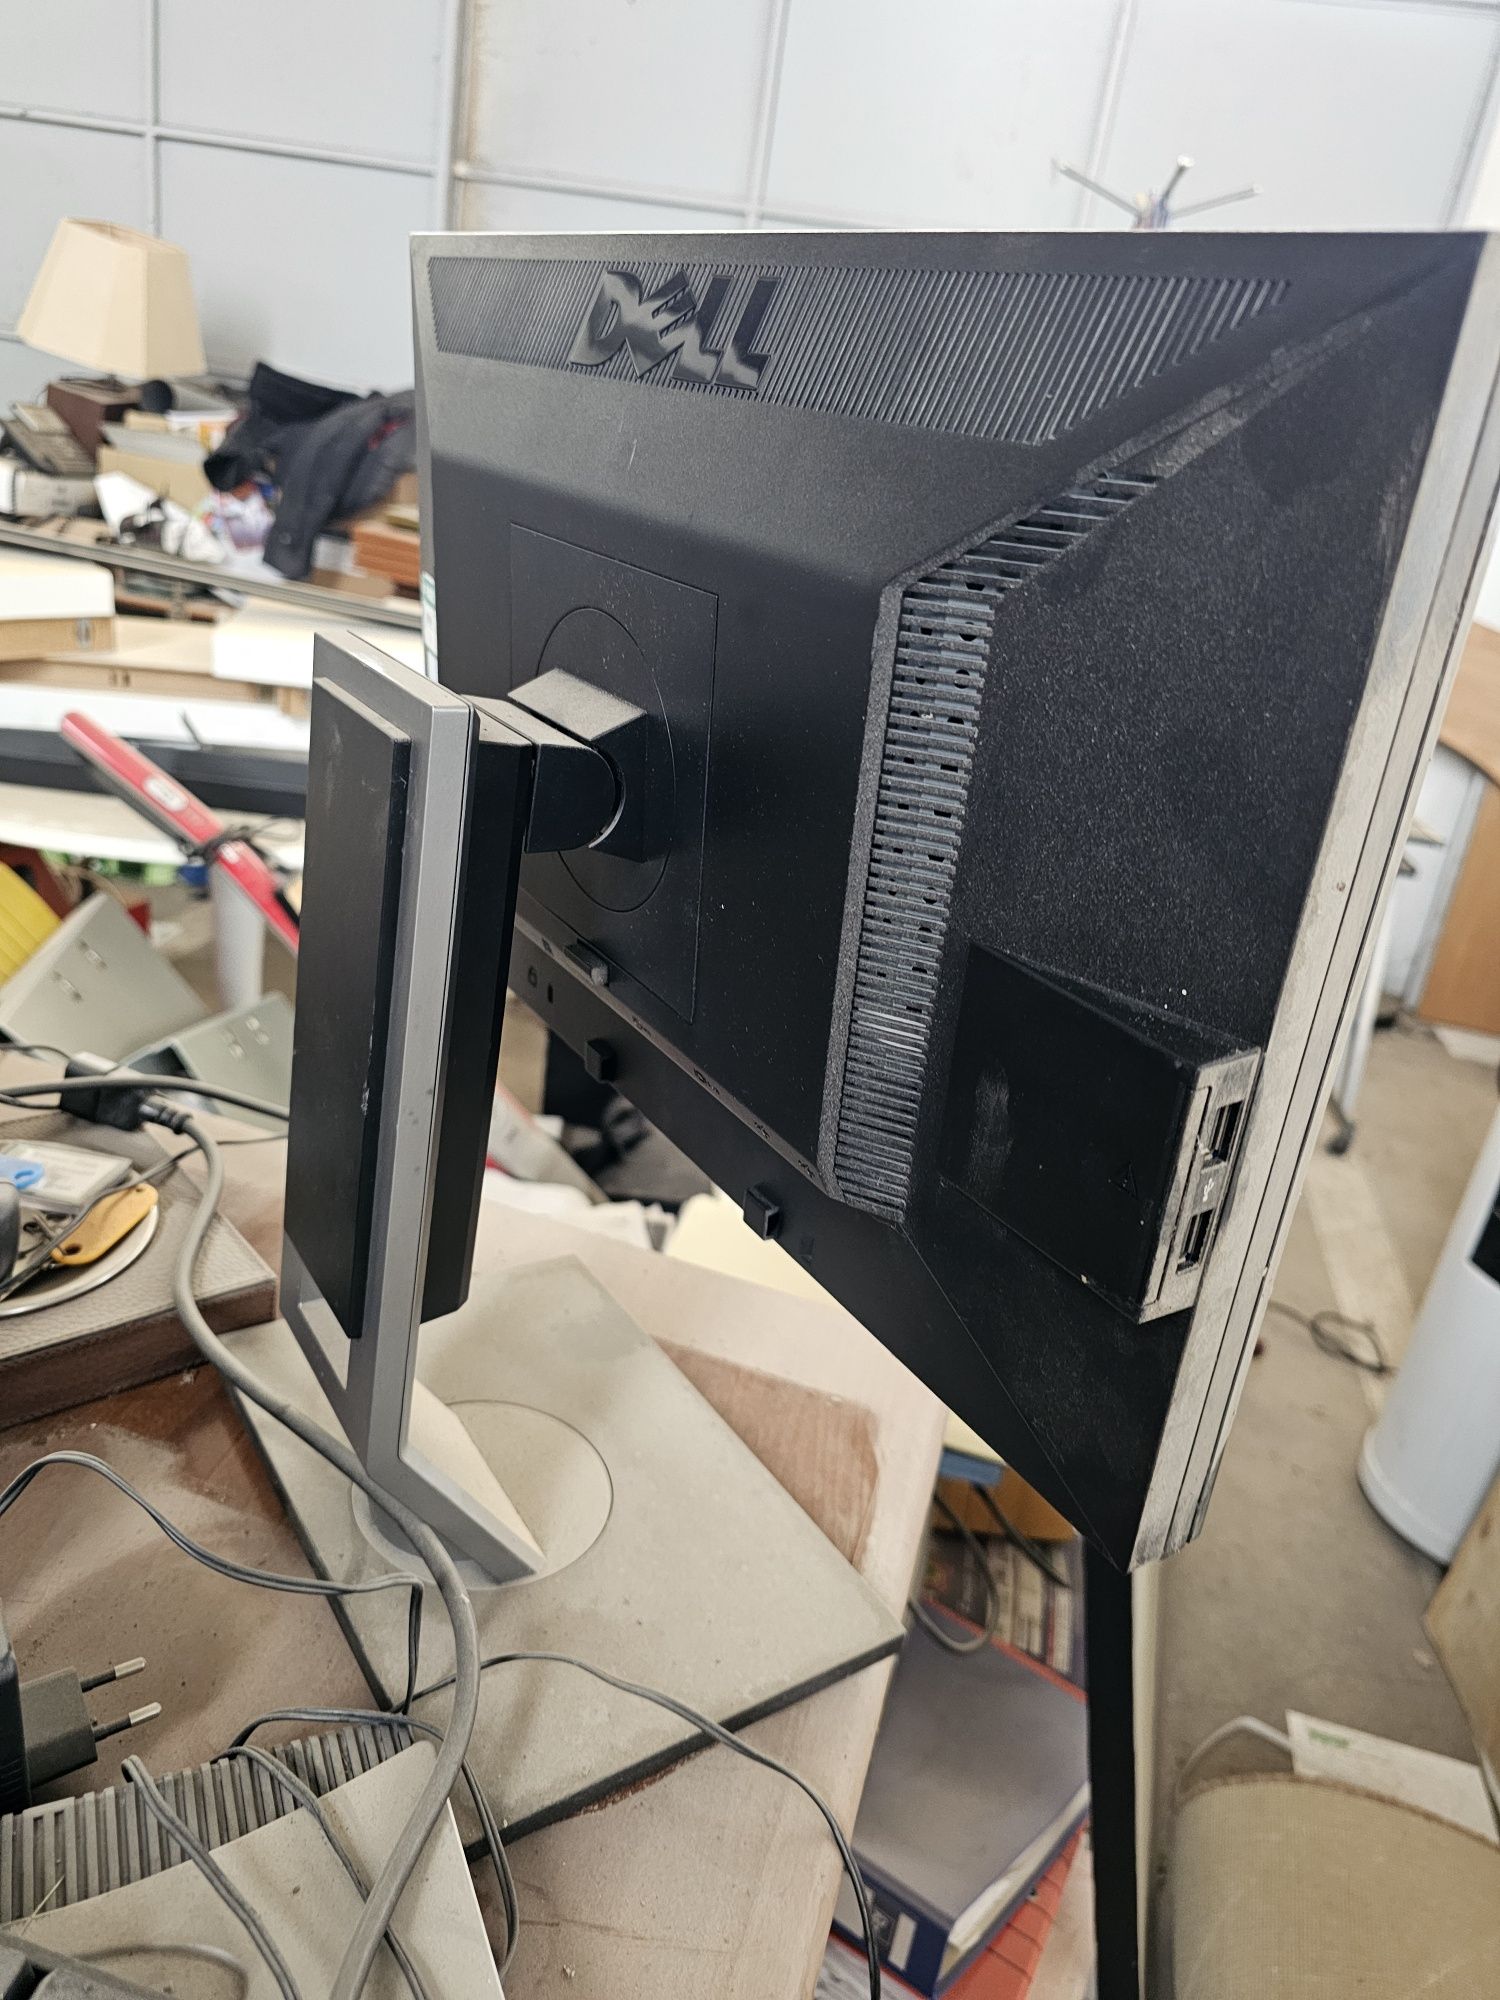 Vendo Monitor Dell